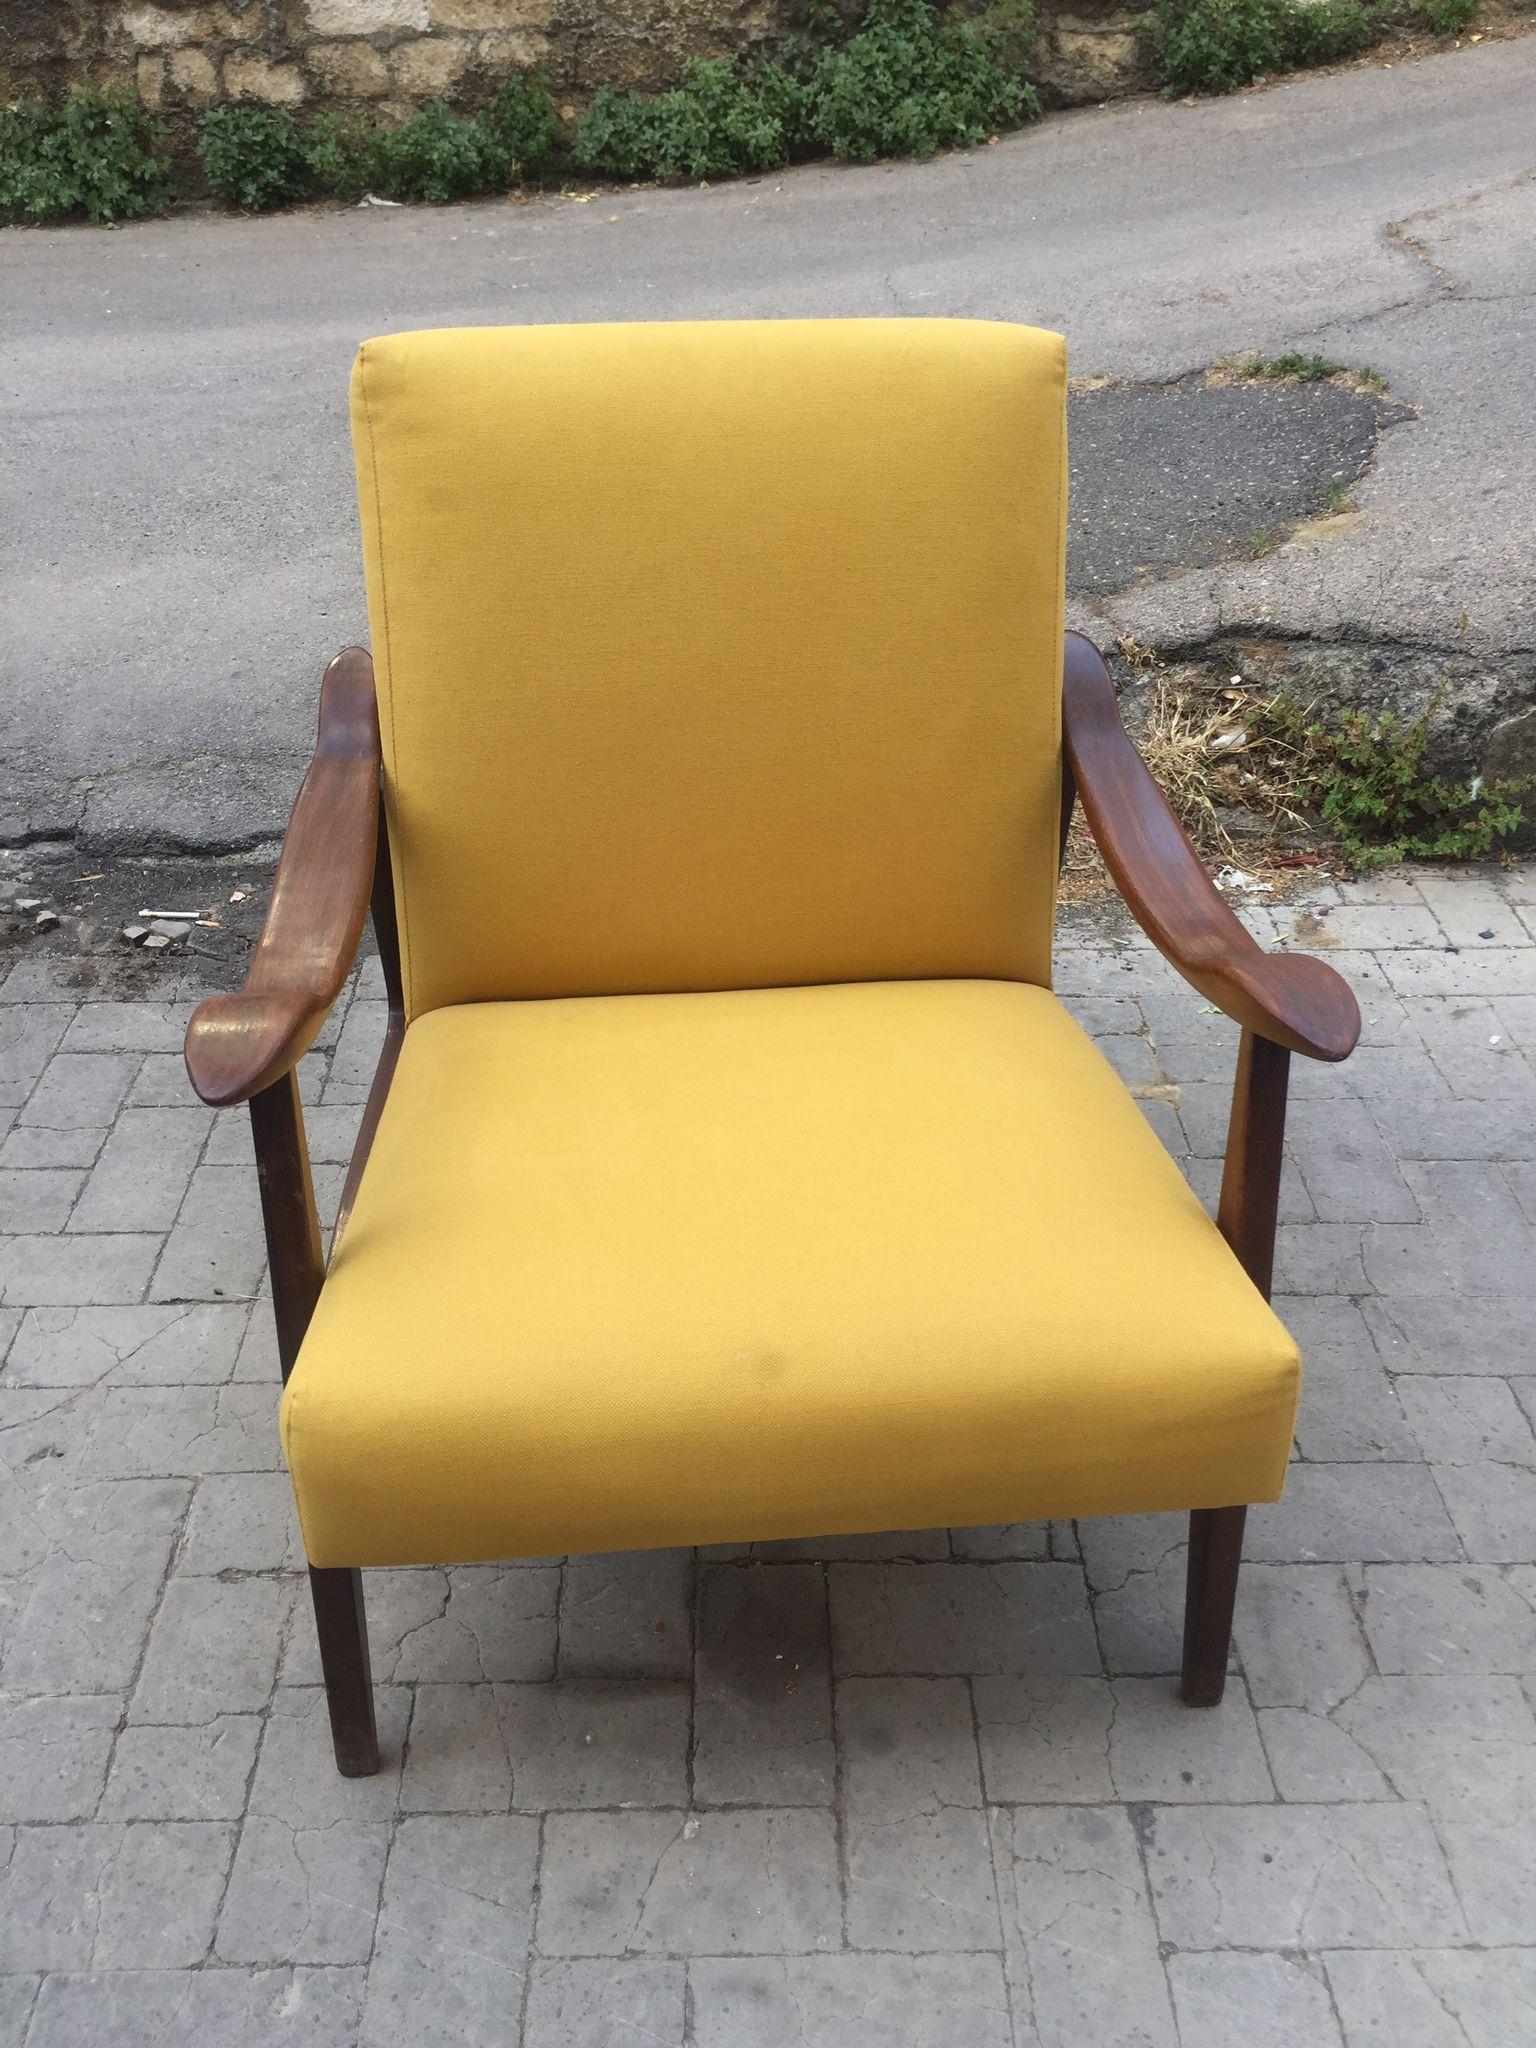 Anspruchsvoller und bequemer Sessel mit gelbem Baumwollbezug. Original-Polsterung und Polsterung. Die Konstruktion ist aus Palisanderholz.

Gianfranco Frattini (15. Mai 1926 - 6. April 2004) war ein italienischer Architekt und Designer. Er gehört